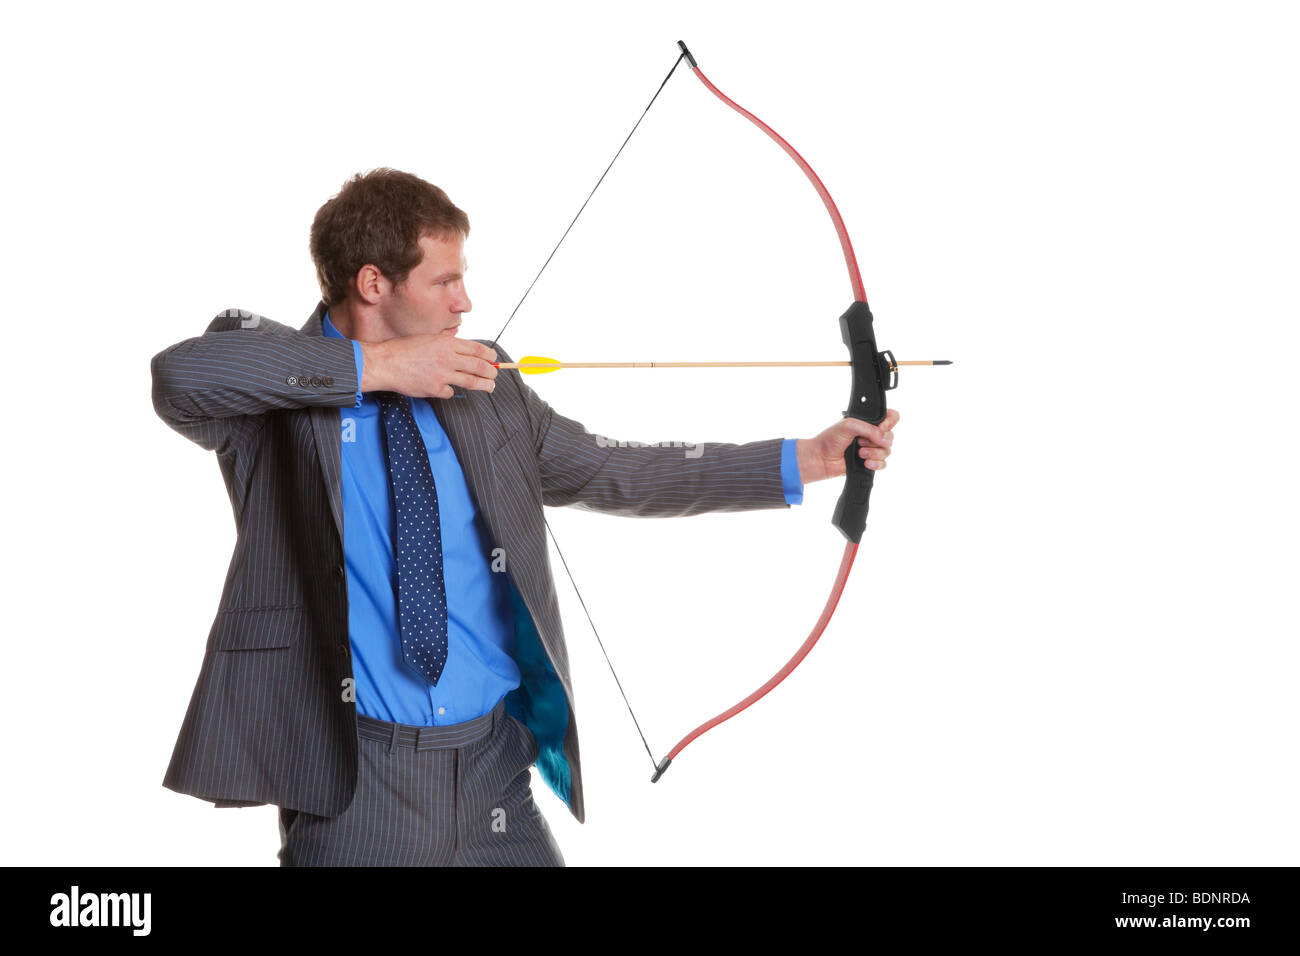 Geschäftsmann in Nadelstreifen Anzug schießen, Pfeil und Bogen, isoliert auf einem weißen Hintergrund. Stockfoto